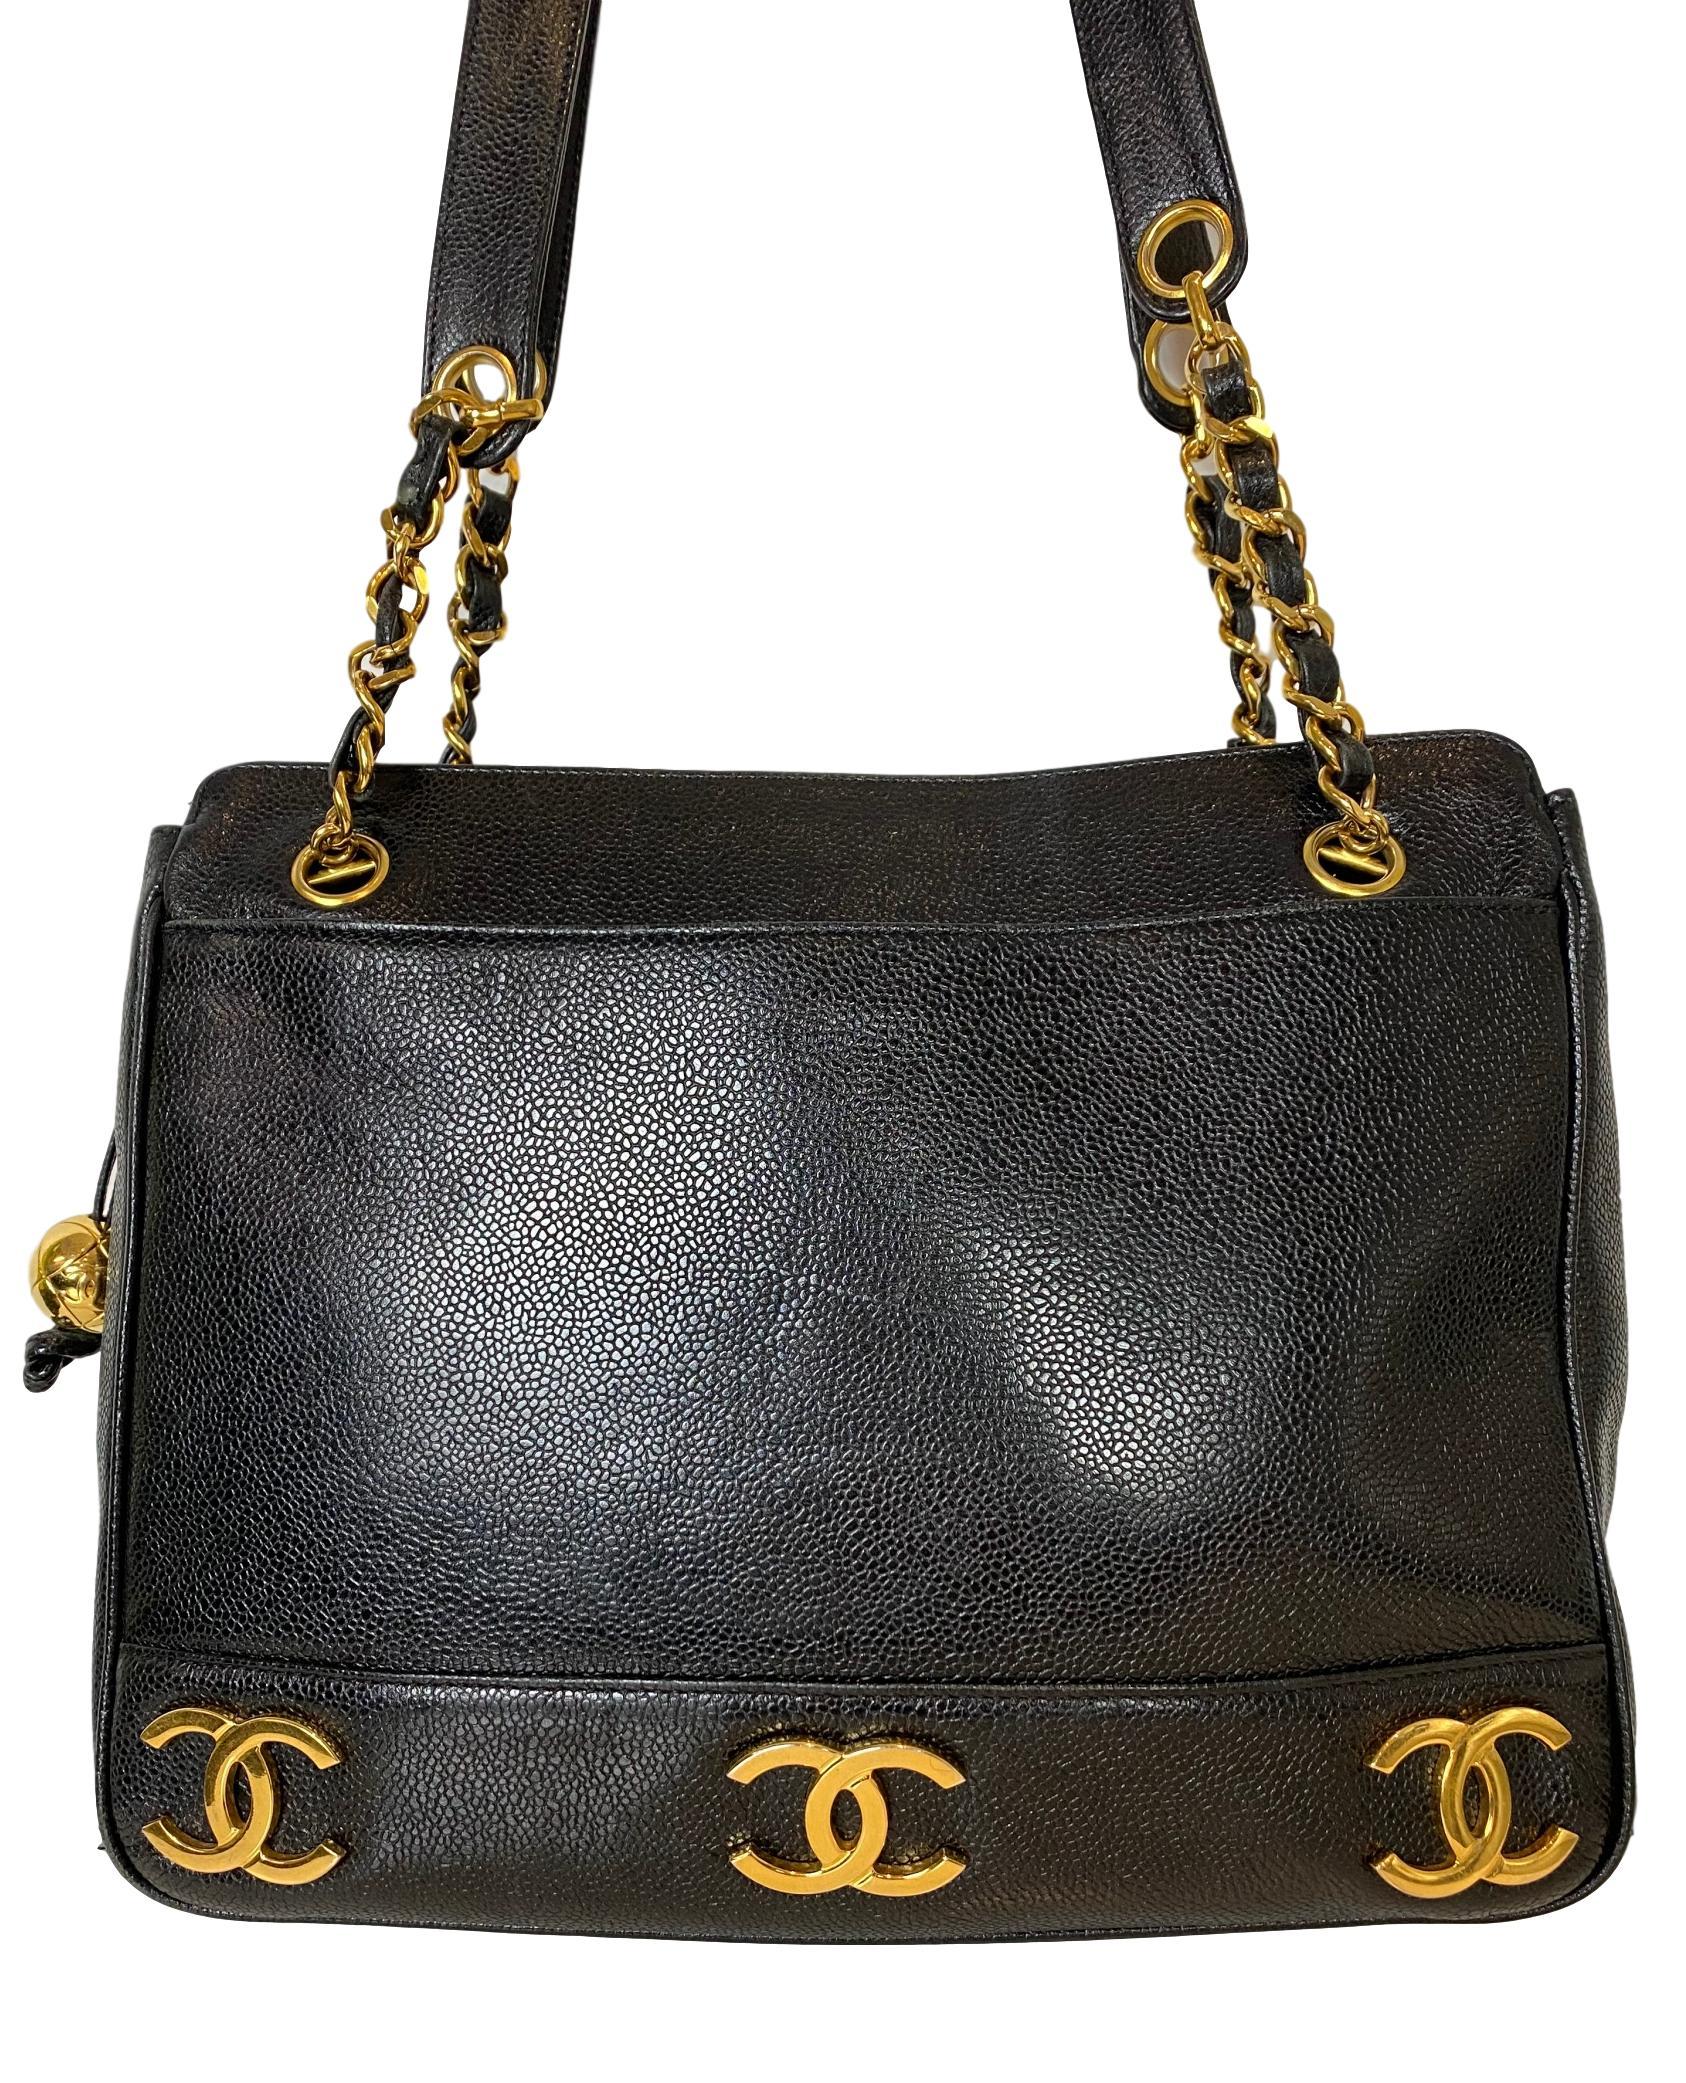 Iconic Chanel Vintage Black Caviar Leather Triple Logo Shoulder Bag, 1994 6